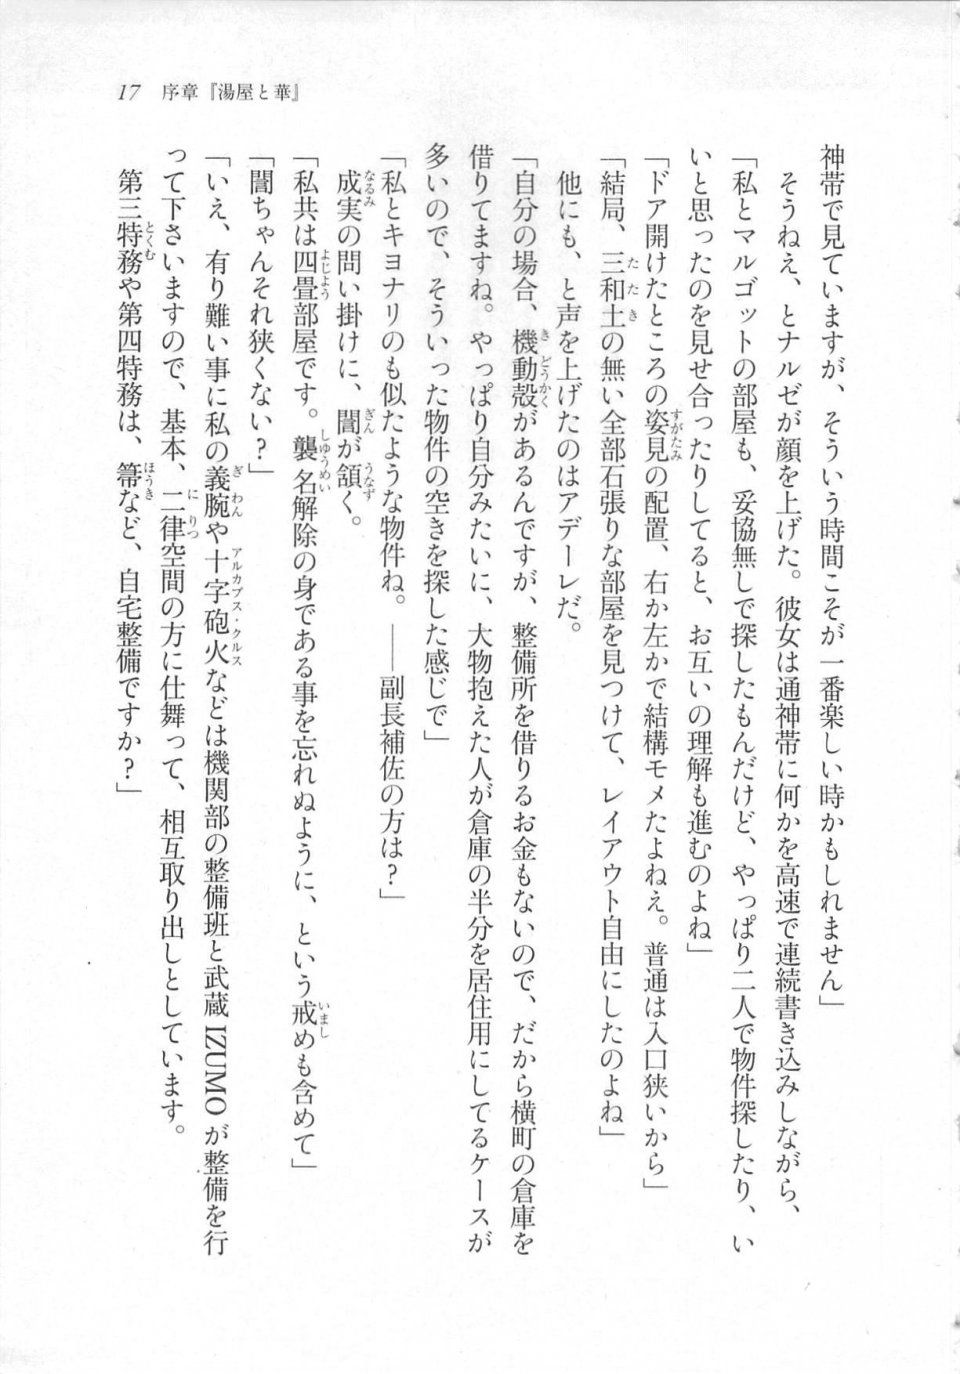 Kyoukai Senjou no Horizon LN Sidestory Vol 3 - Photo #21